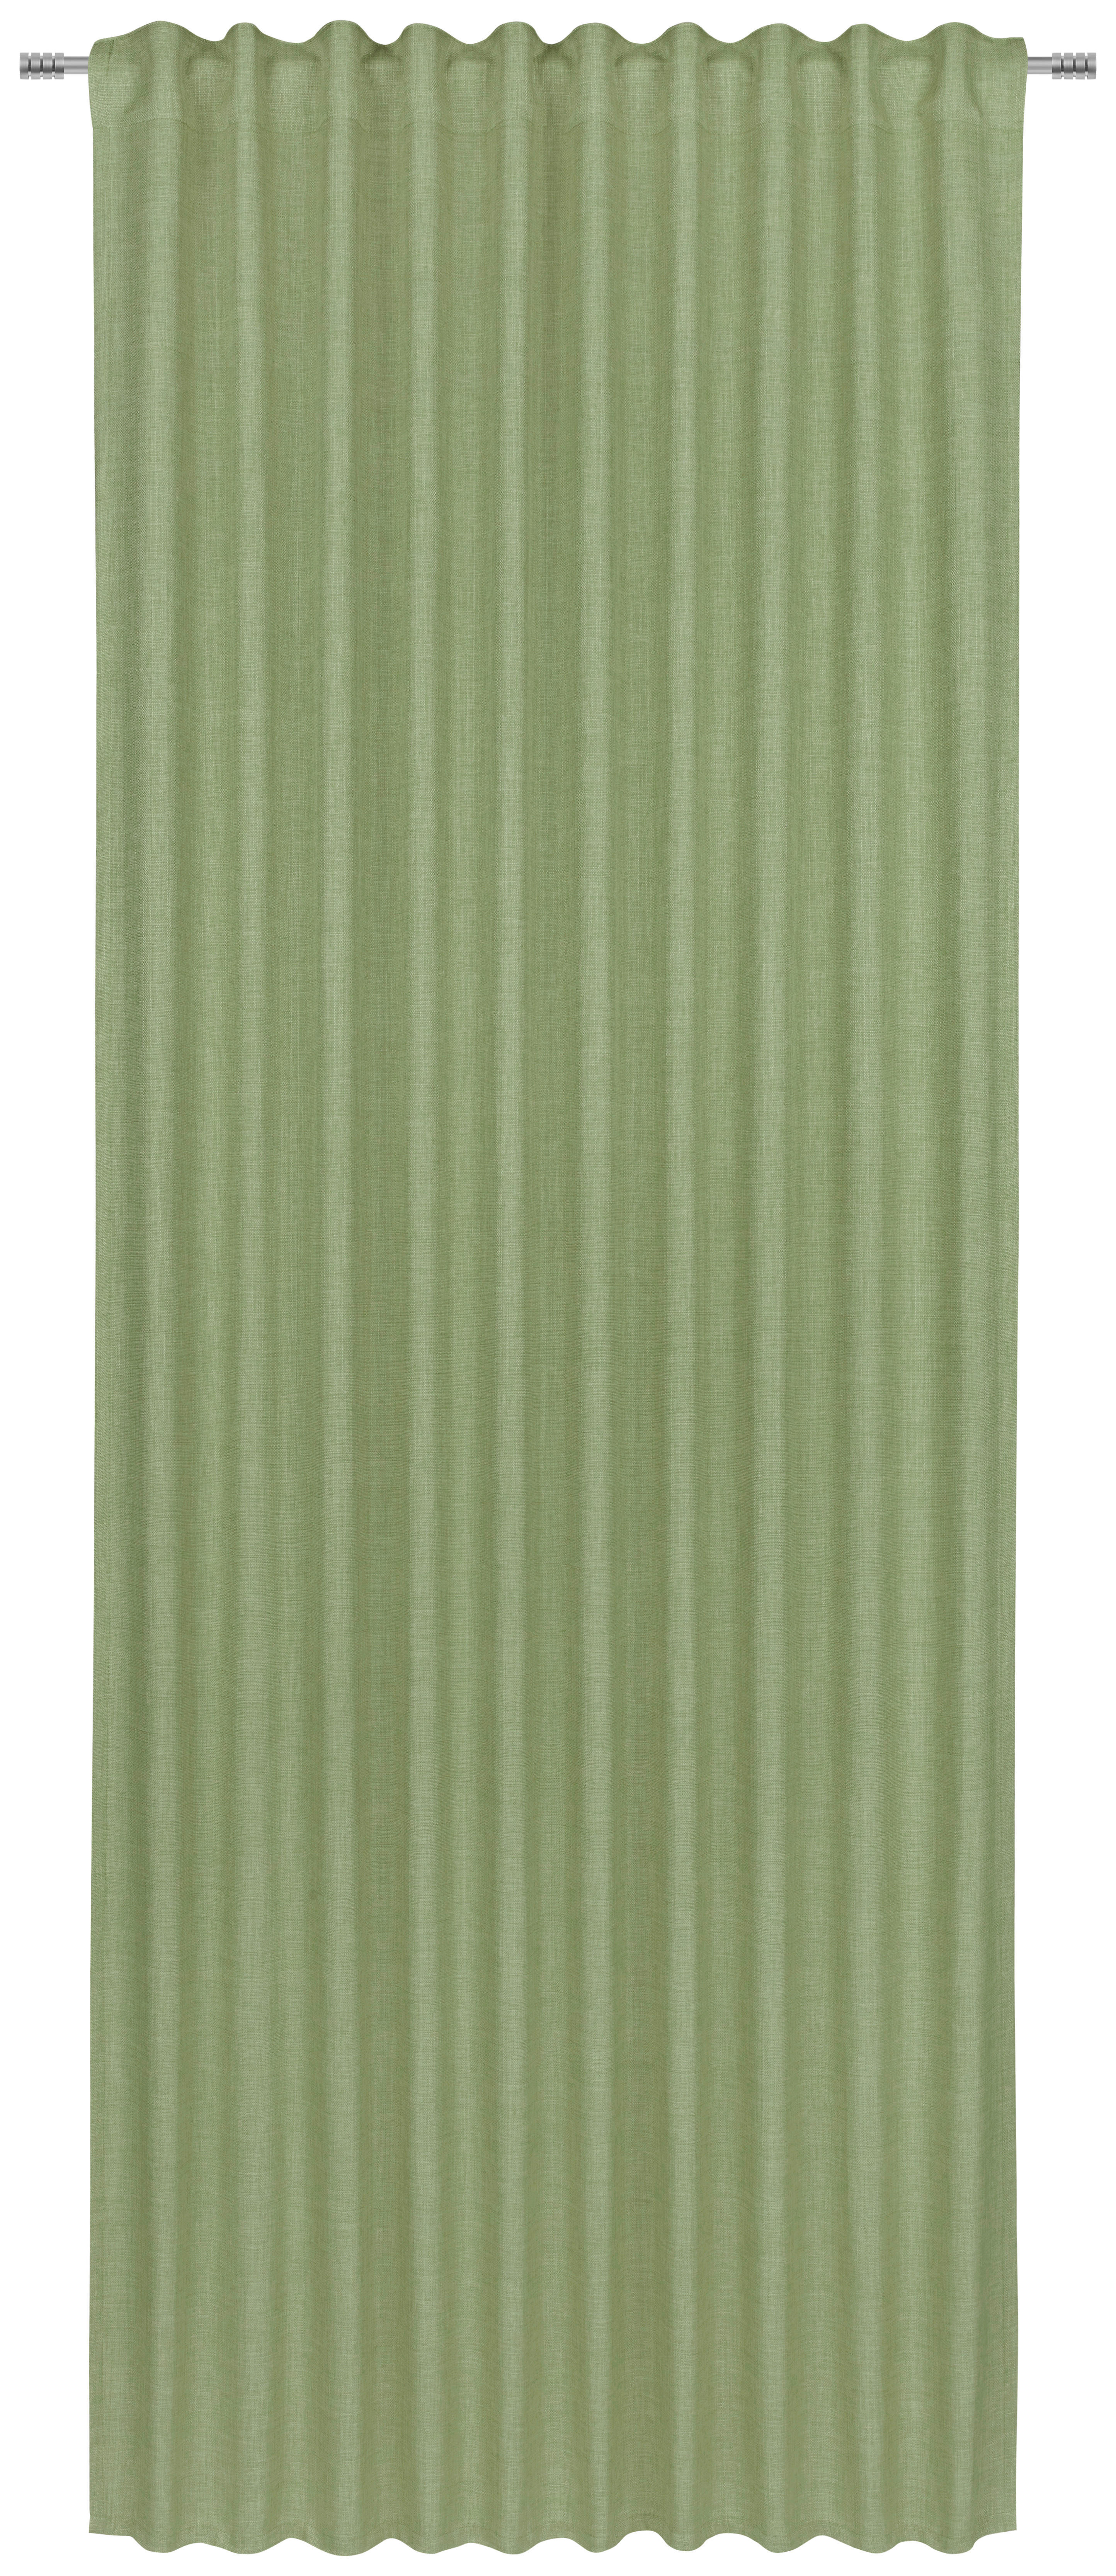 KÉSZFÜGGÖNY Részben fényzáró  - Zöld, Basics, Textil (140/245cm) - Boxxx